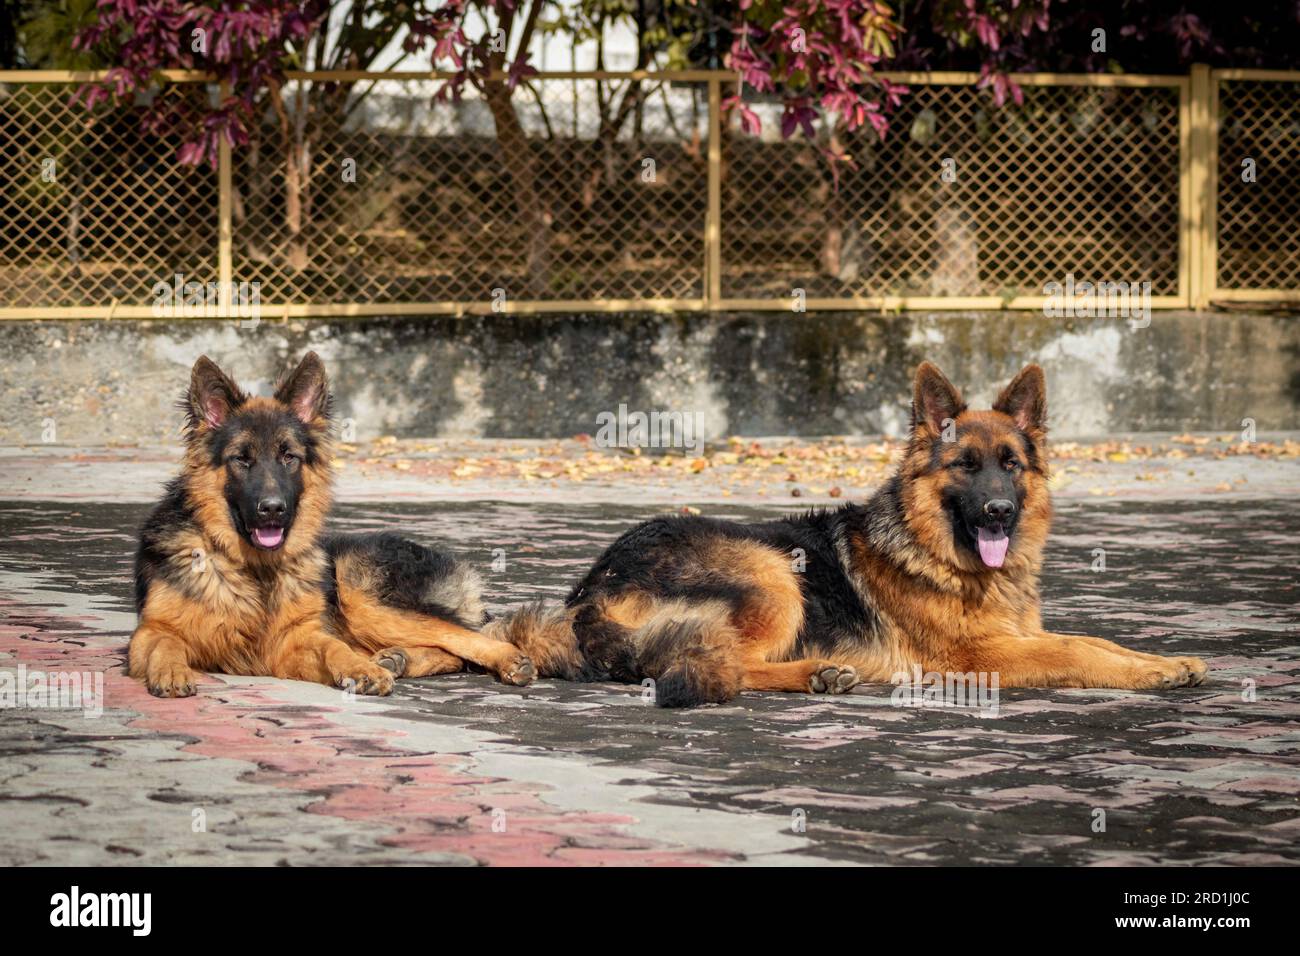 Deux bergers allemands assis par terre dans une maison. Le berger allemand est une race de chien populaire. Banque D'Images